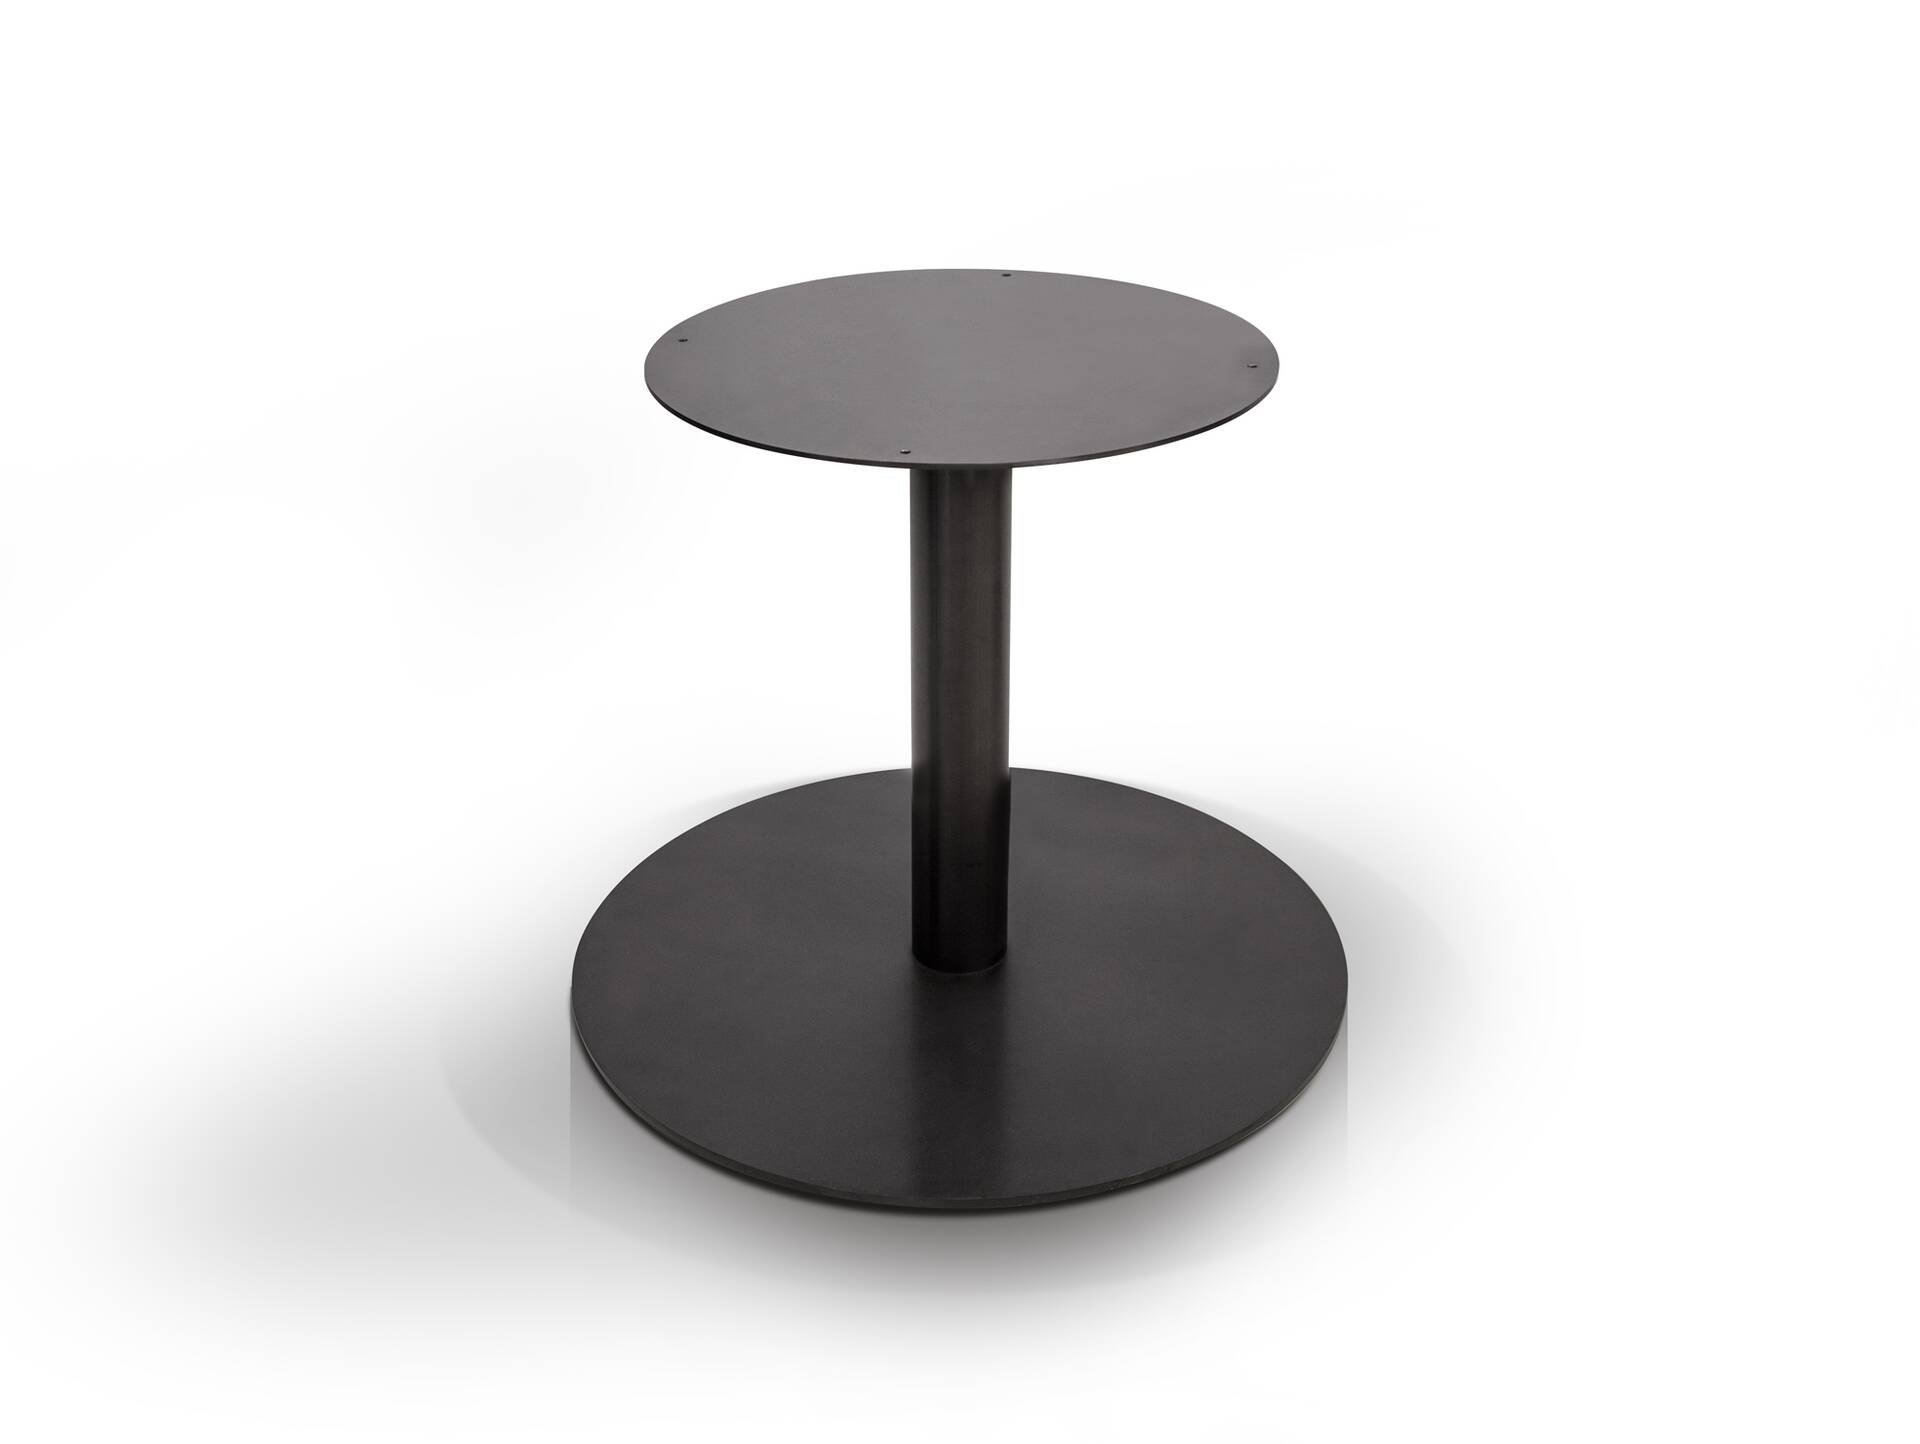 Tischgestell für GASTRO Esstisch rund, Material Stahl, schwarz 55 cm